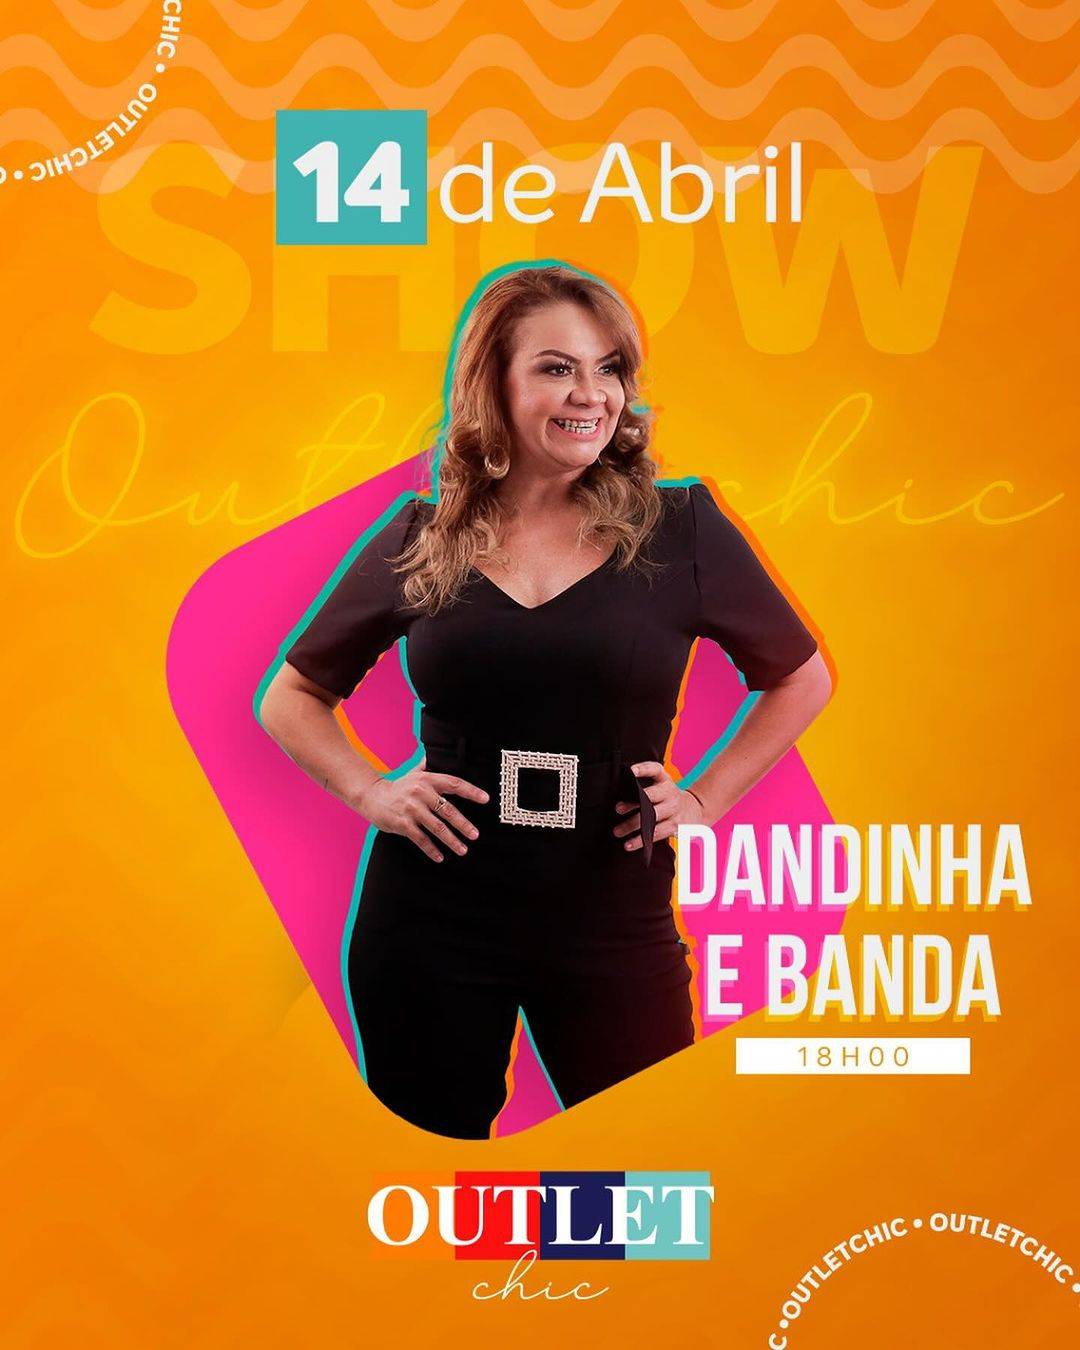 Outlet Chic promete agitar público com show de Dandinha e Banda nesse domingo